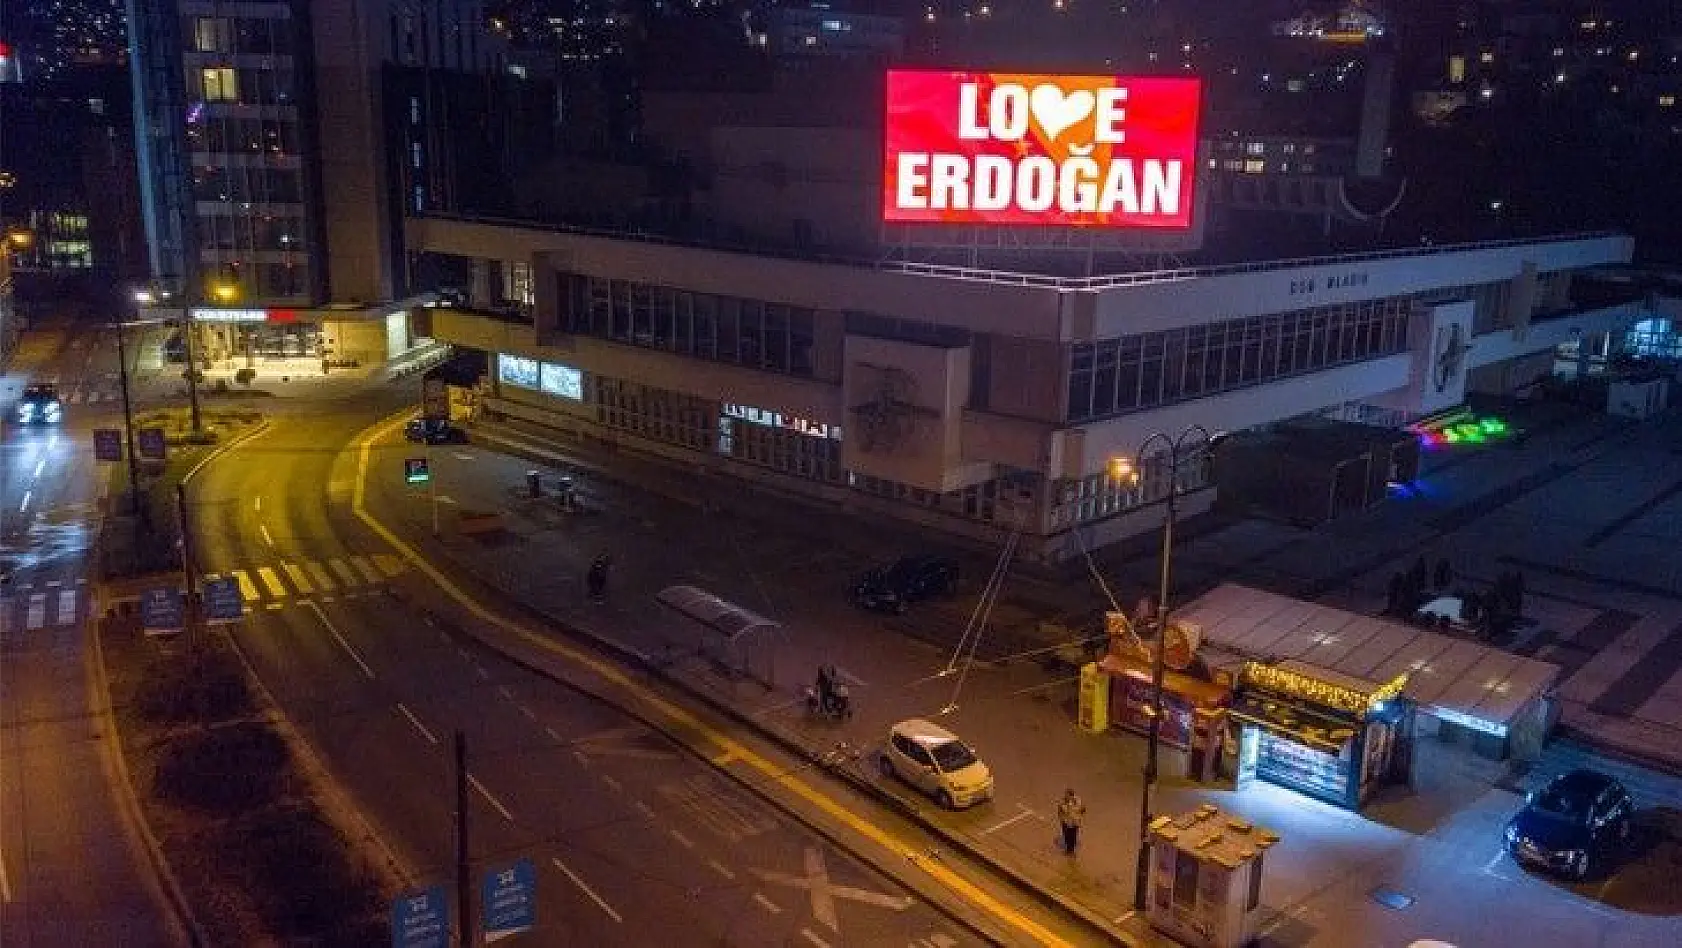 Saraybosna'dan 'Stop Erdoğan'a cevap: Love Erdoğan